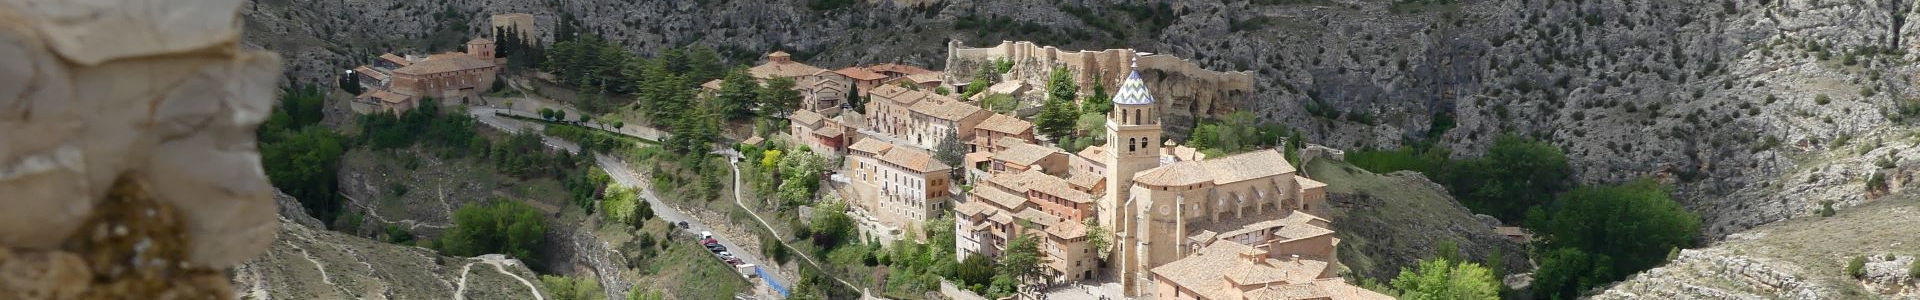 Photo qui montre Le Village médiévial d'Albarracin, Aragon, Espagne | Cliquer pour agrandir